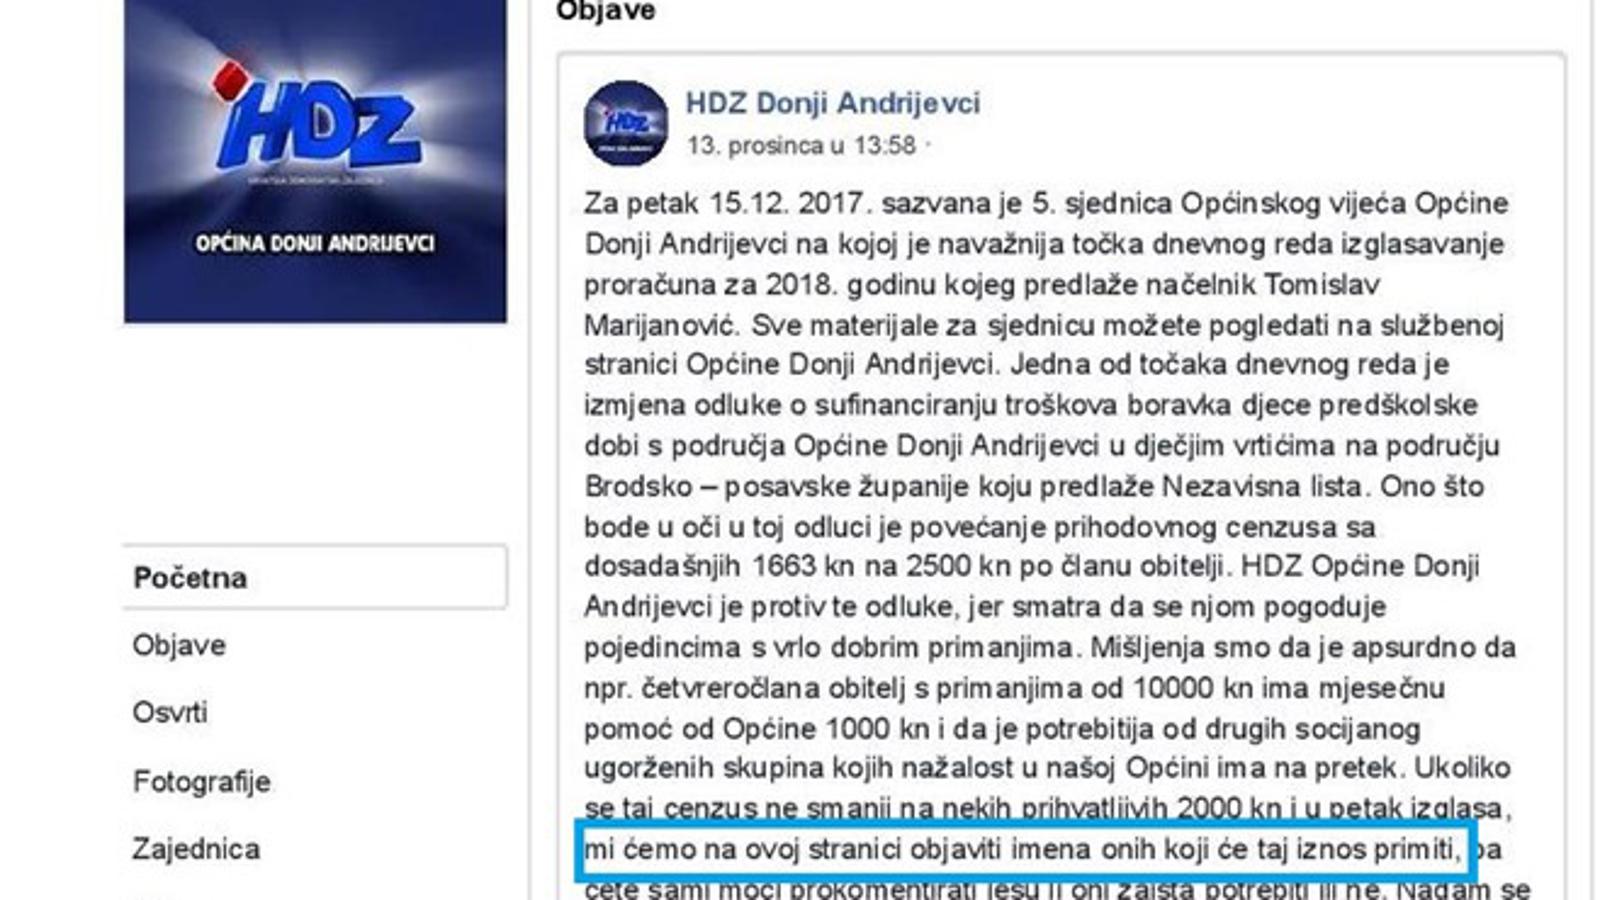 Objava na profilu HDZ-a Doni Andrijevci od 13.12.2017.